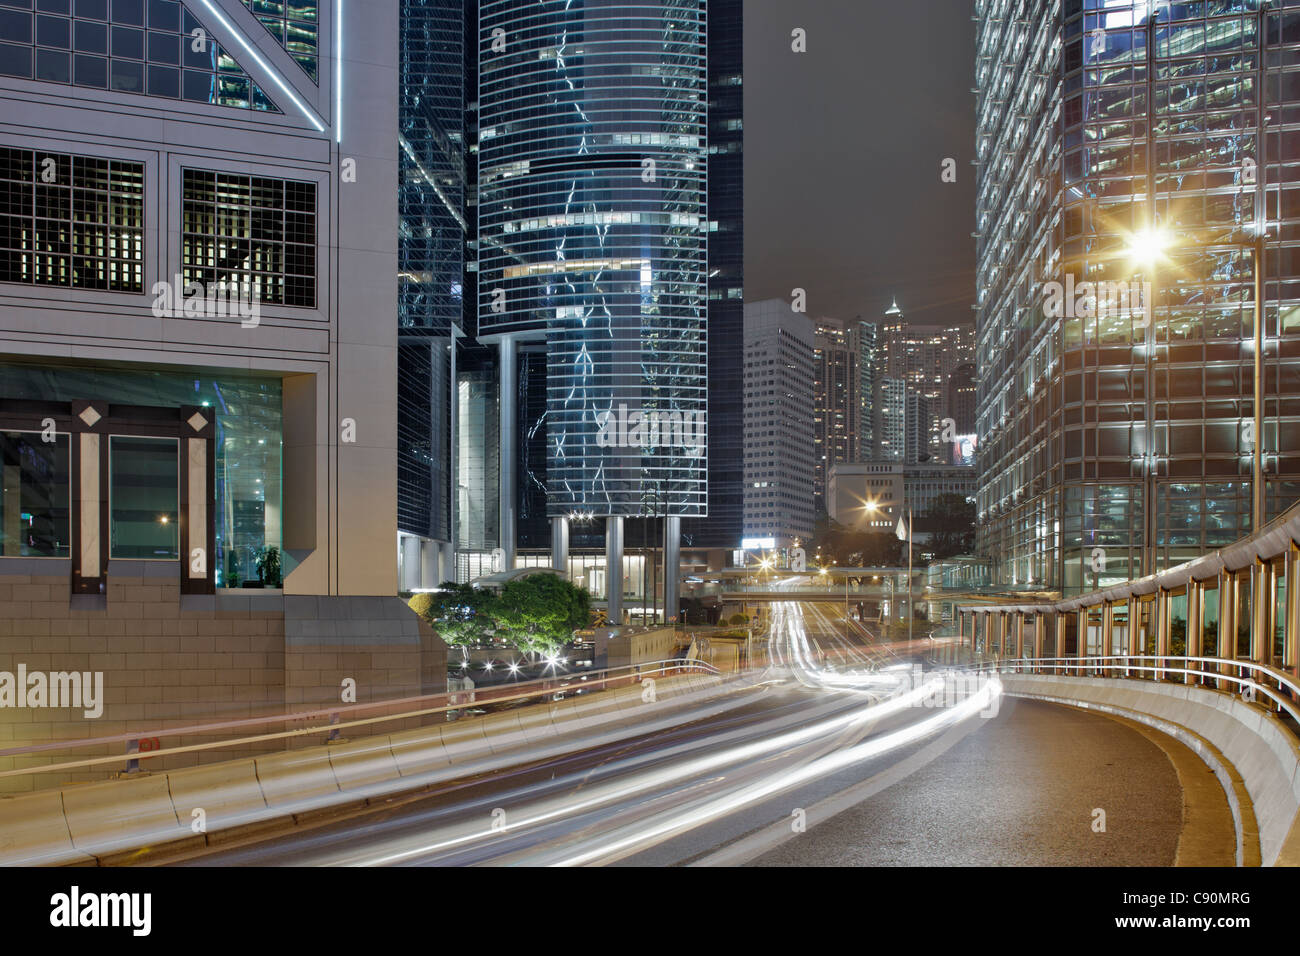 Garden Road at night with Citibank Plaza, Cheung Kong Center, Bank of China Tower, Hong Kong, China Stock Photo